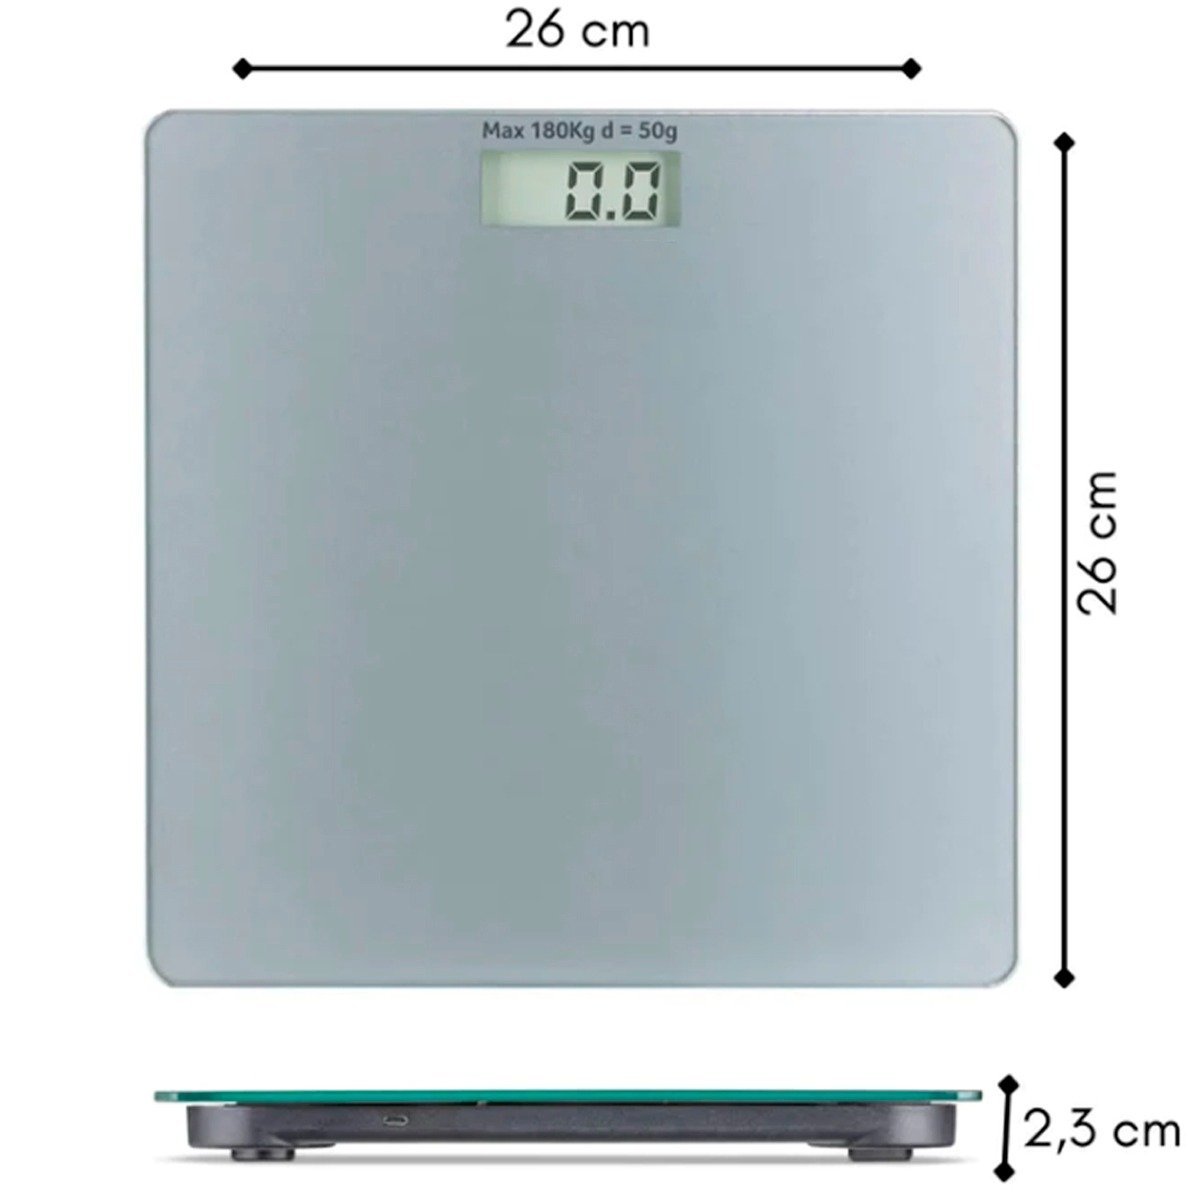 Balança Peso Corporal Digital Recarregável Usb 180 Kg Nova - 3